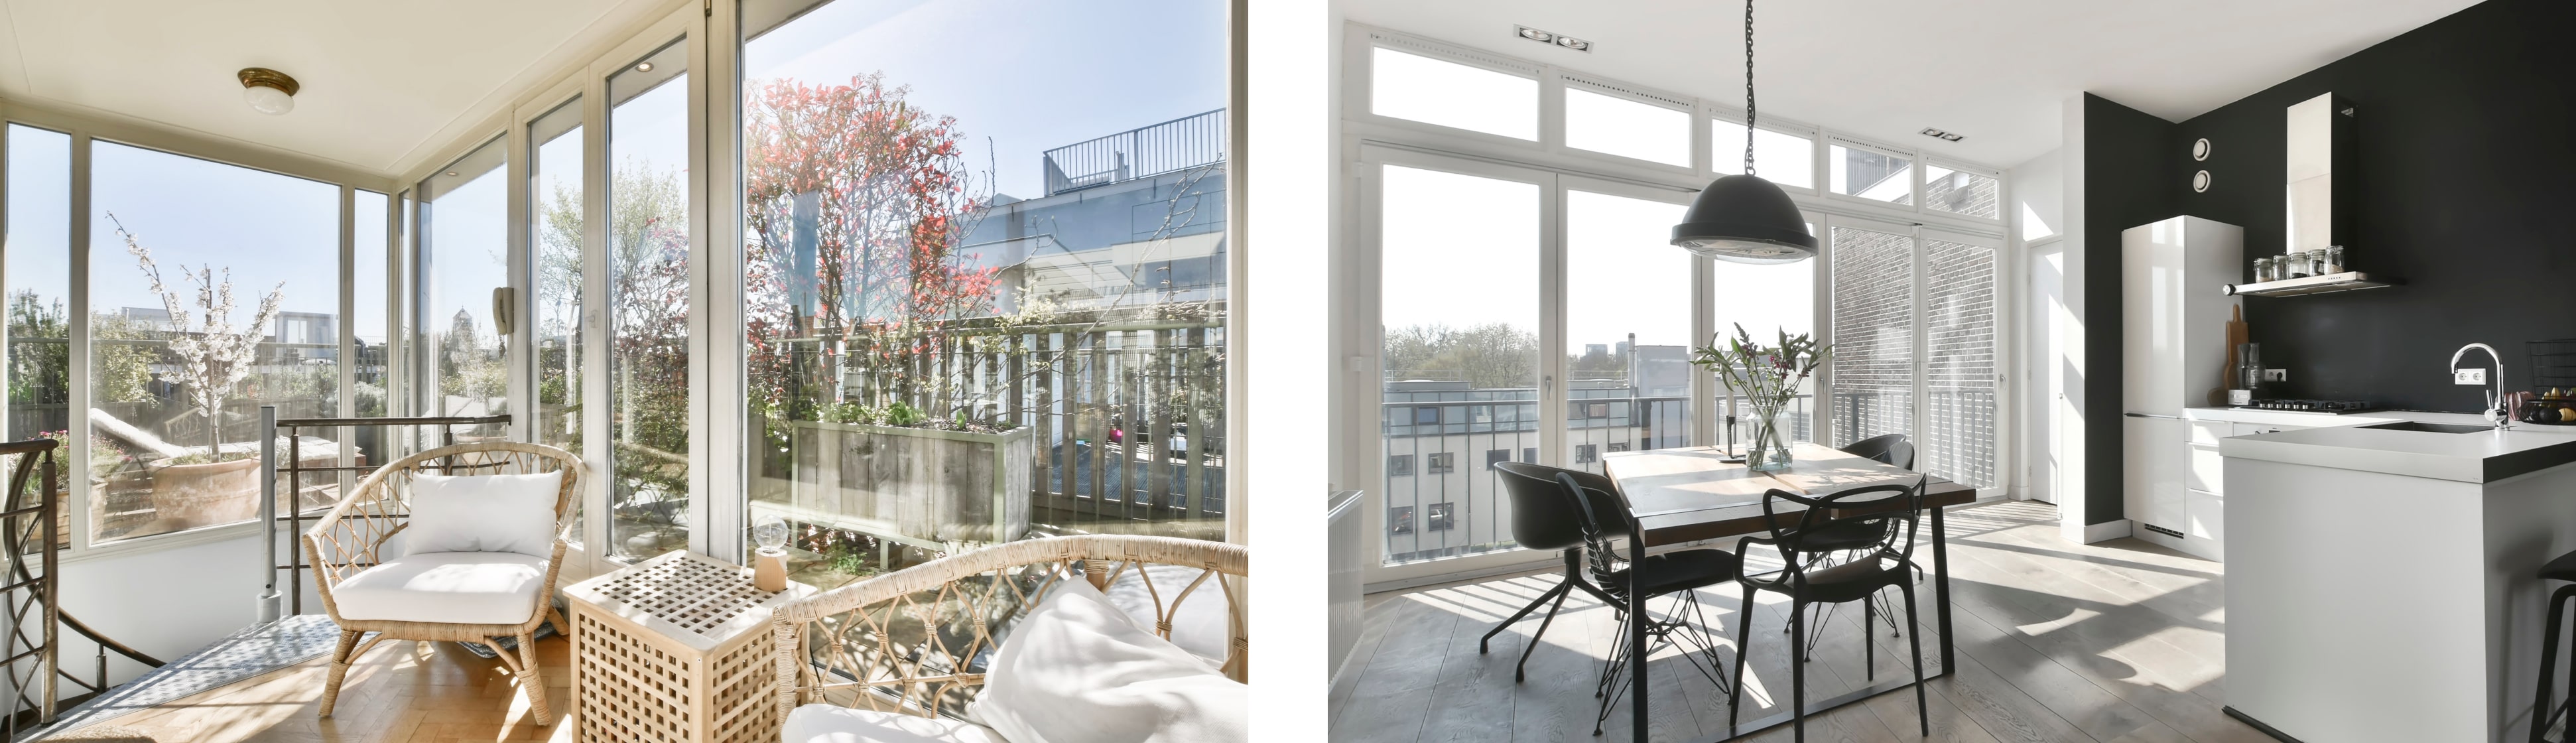 Французские Окна: преимущества, недостатки, схемы отопления помещений с французскими окнами | DEXEN